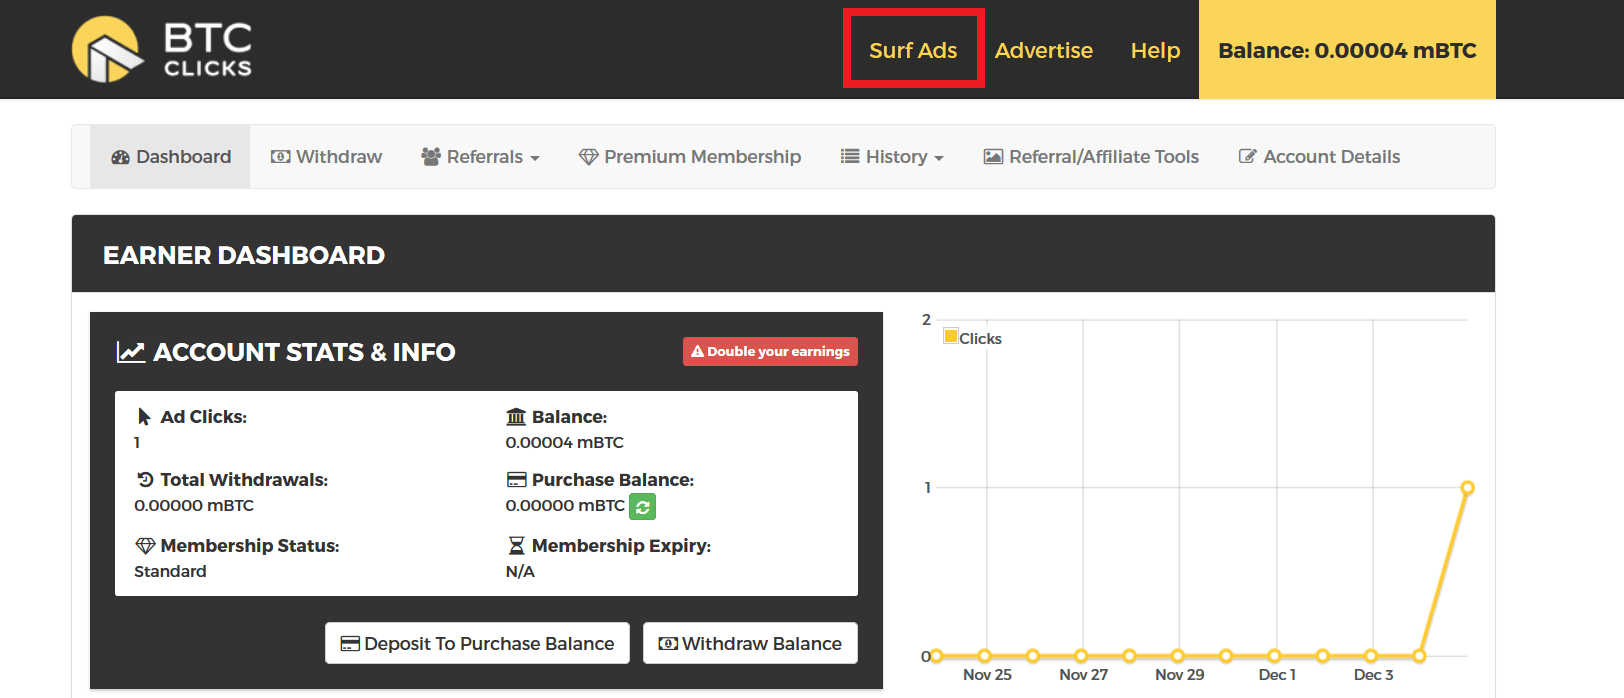 Cliquez sur "Surf Ads" pour accéder au faucet